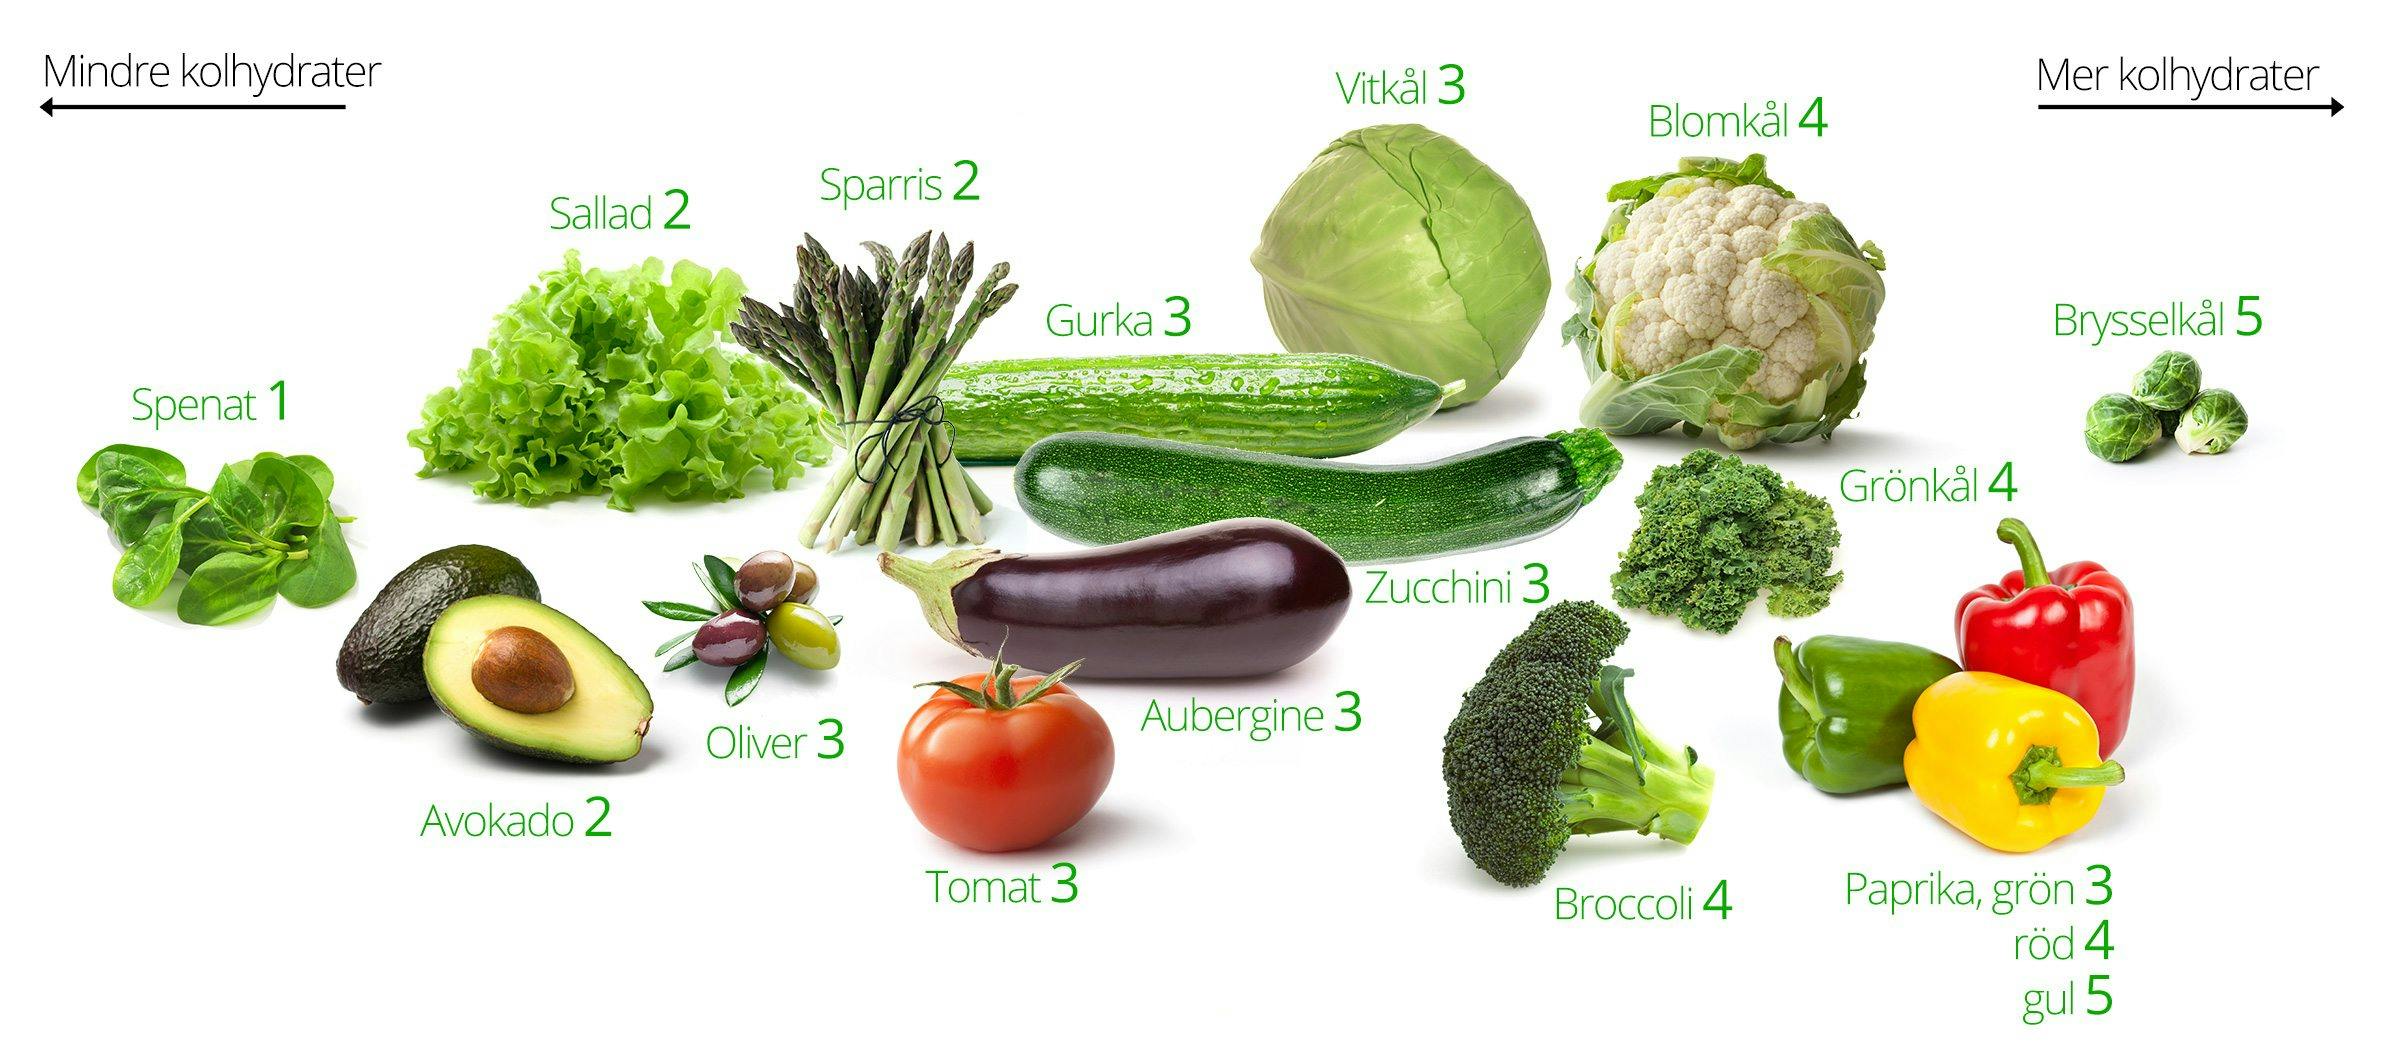 nyttiga grönsaker lista